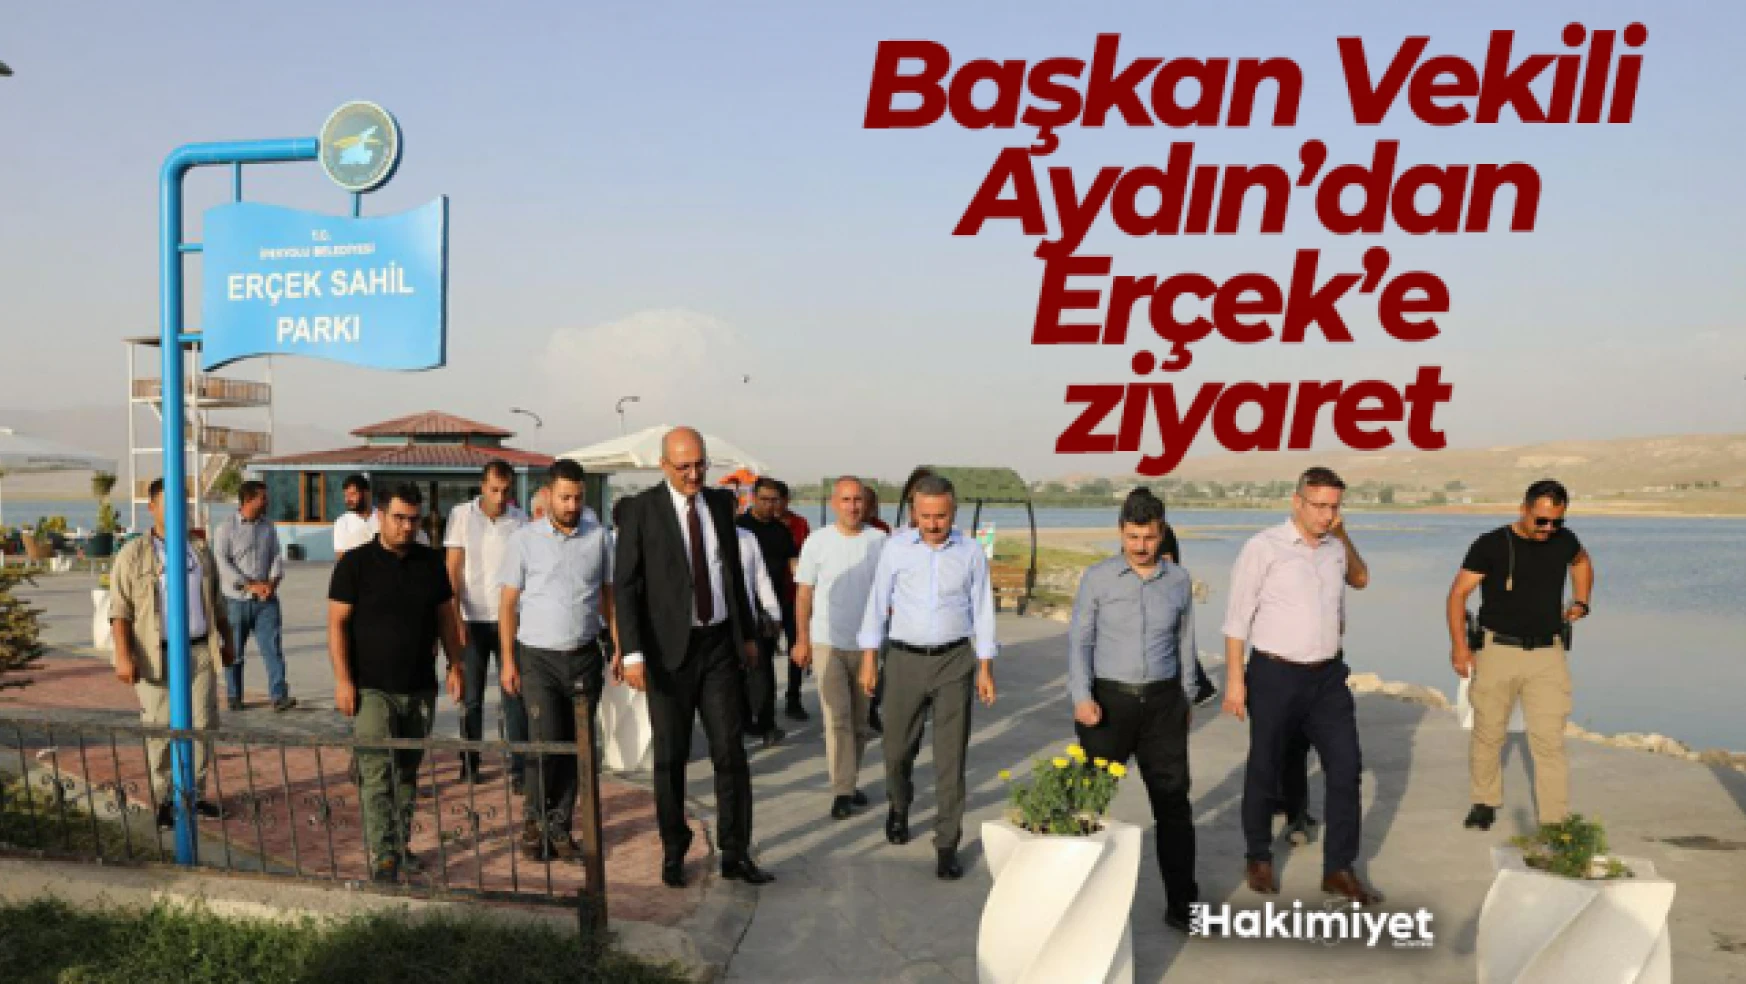 İpekyolu Belediyesi Başkan Vekili Aydın'dan Erçek Mahallesine ziyaret